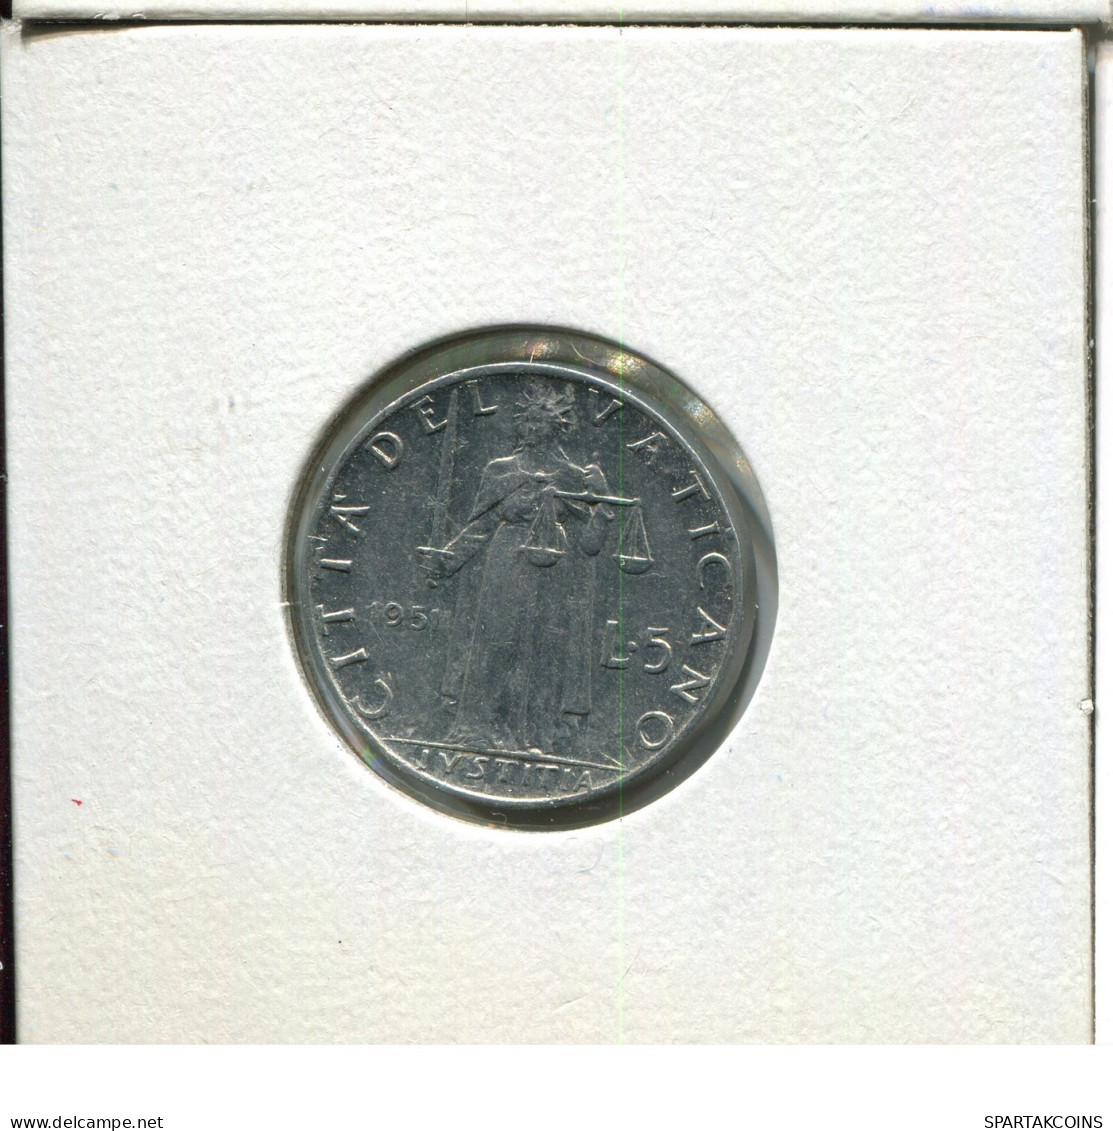 5 LIRE 1951 VATICAN Coin Pius XII (1939-1958) #AW852.U.A - Vatikan